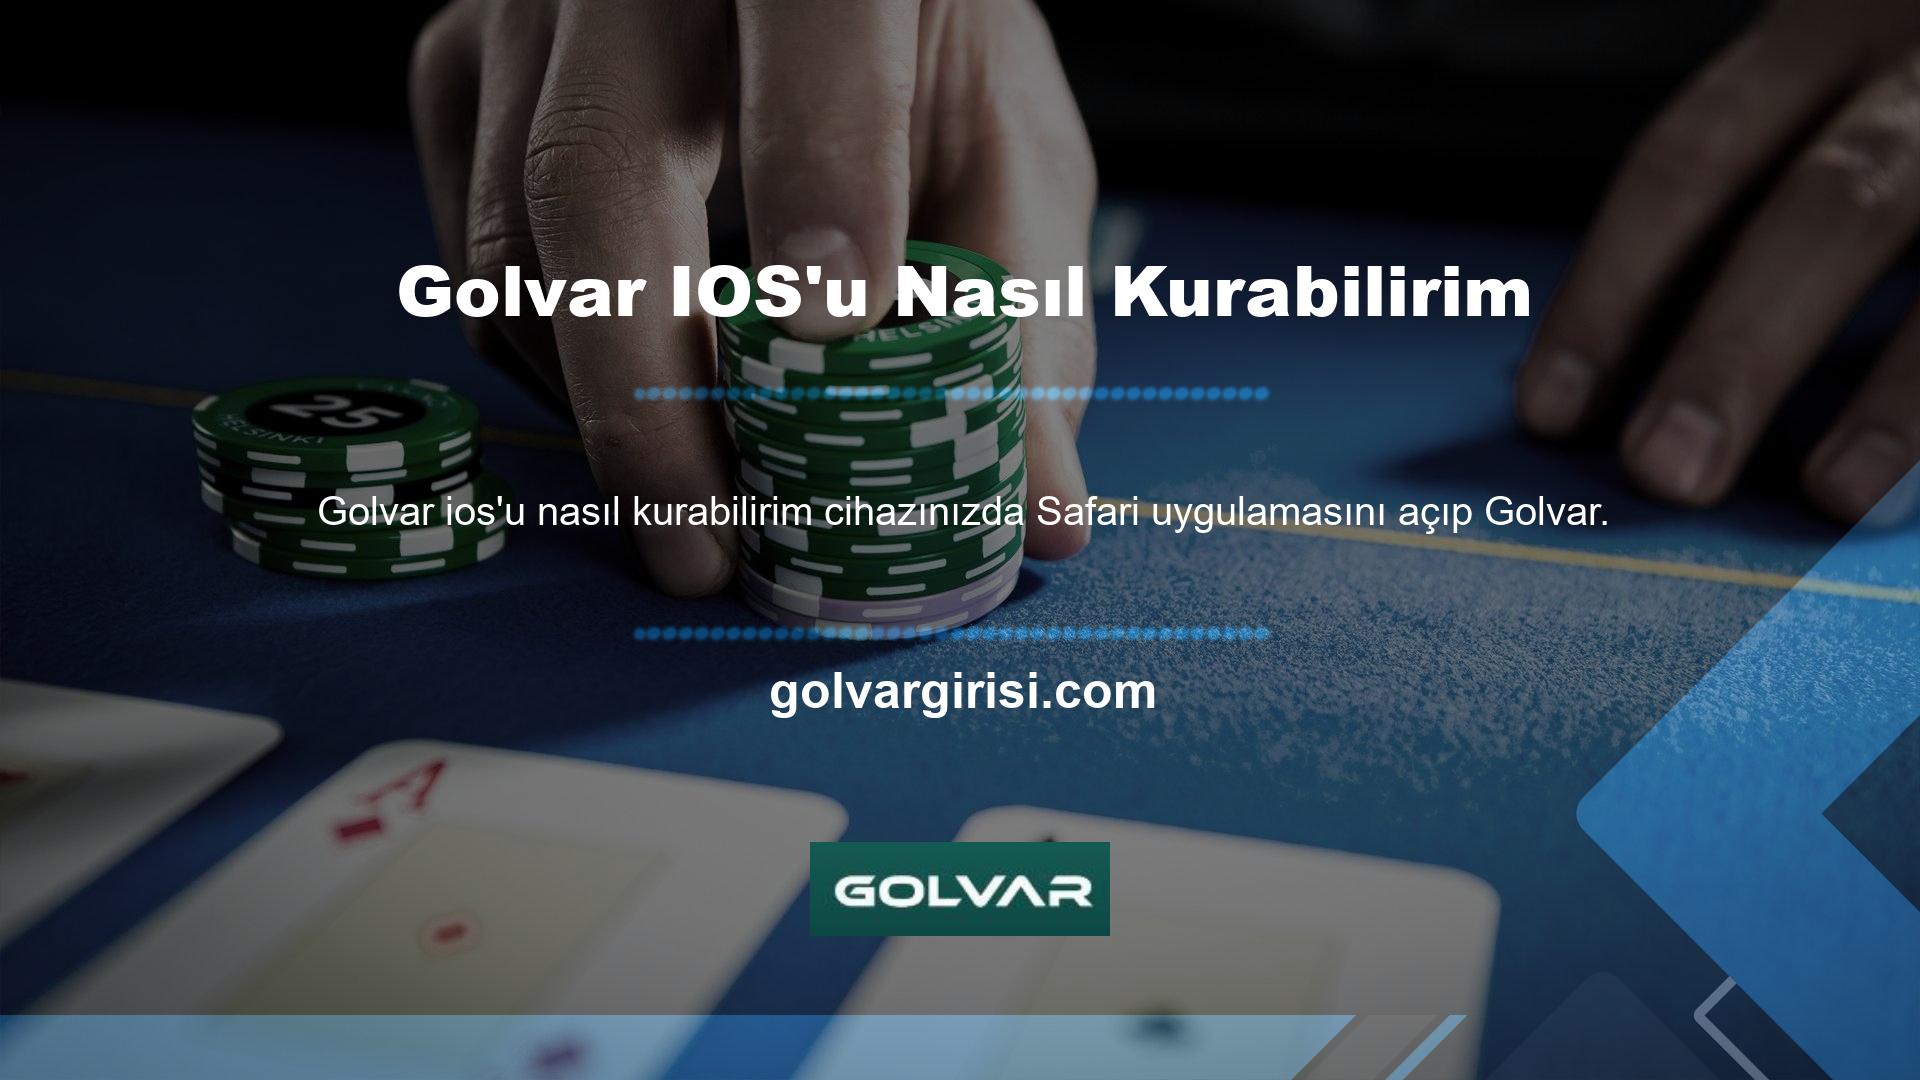 com adresinden Golvar iPhone uygulamasını seçerek Sanal Bahis Siteleri Mobil Uygulamasını iOS telefon veya tabletinize indirebilirsiniz